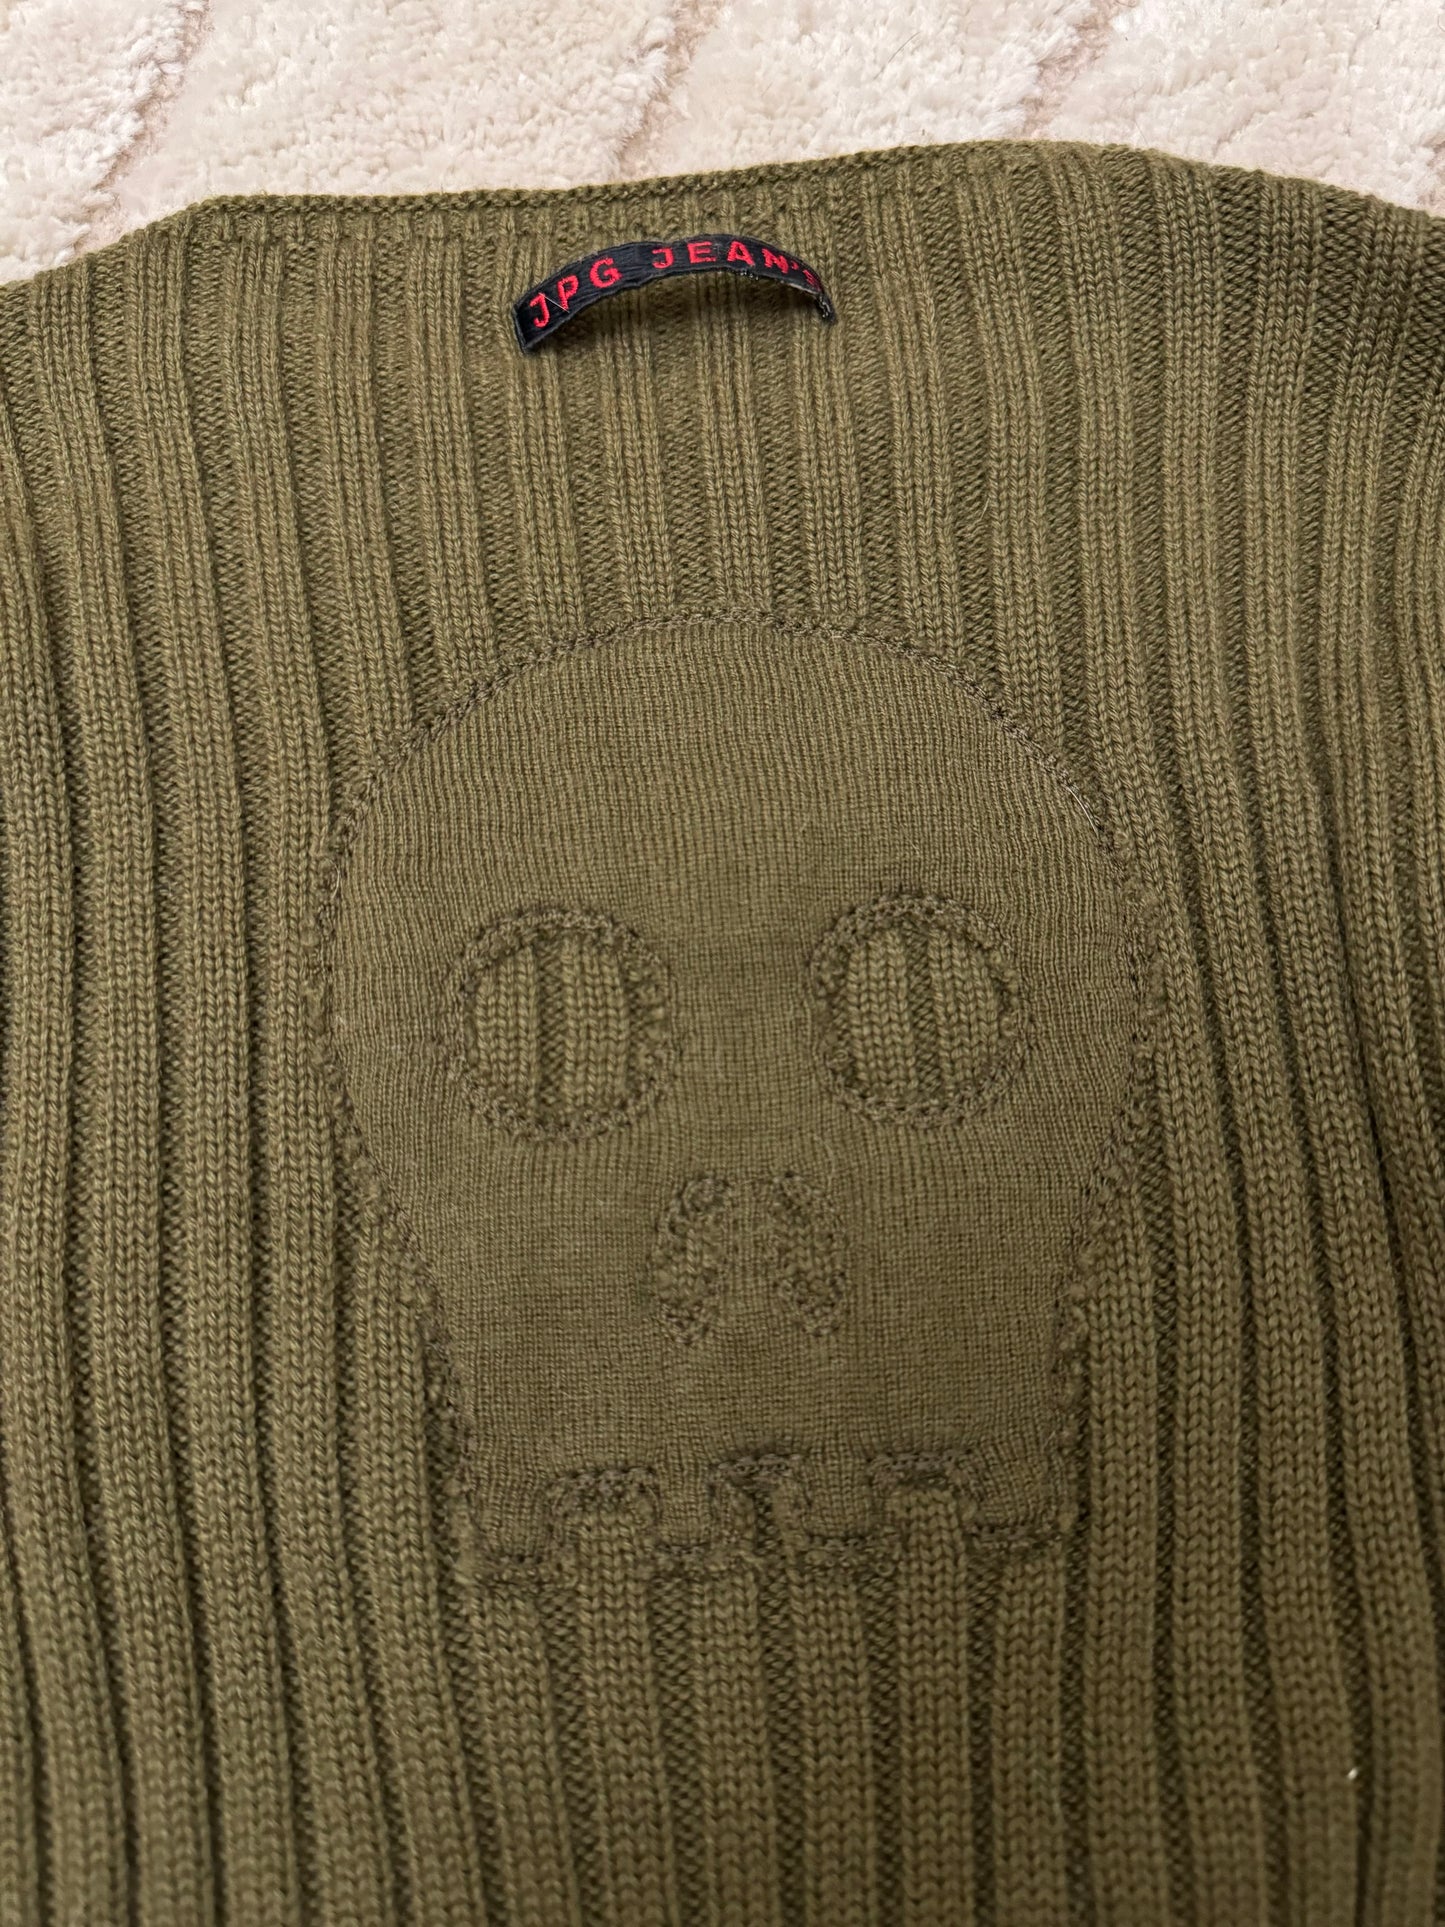 1990s Jean Paul Gaultier Skull Olive Sweater (S)